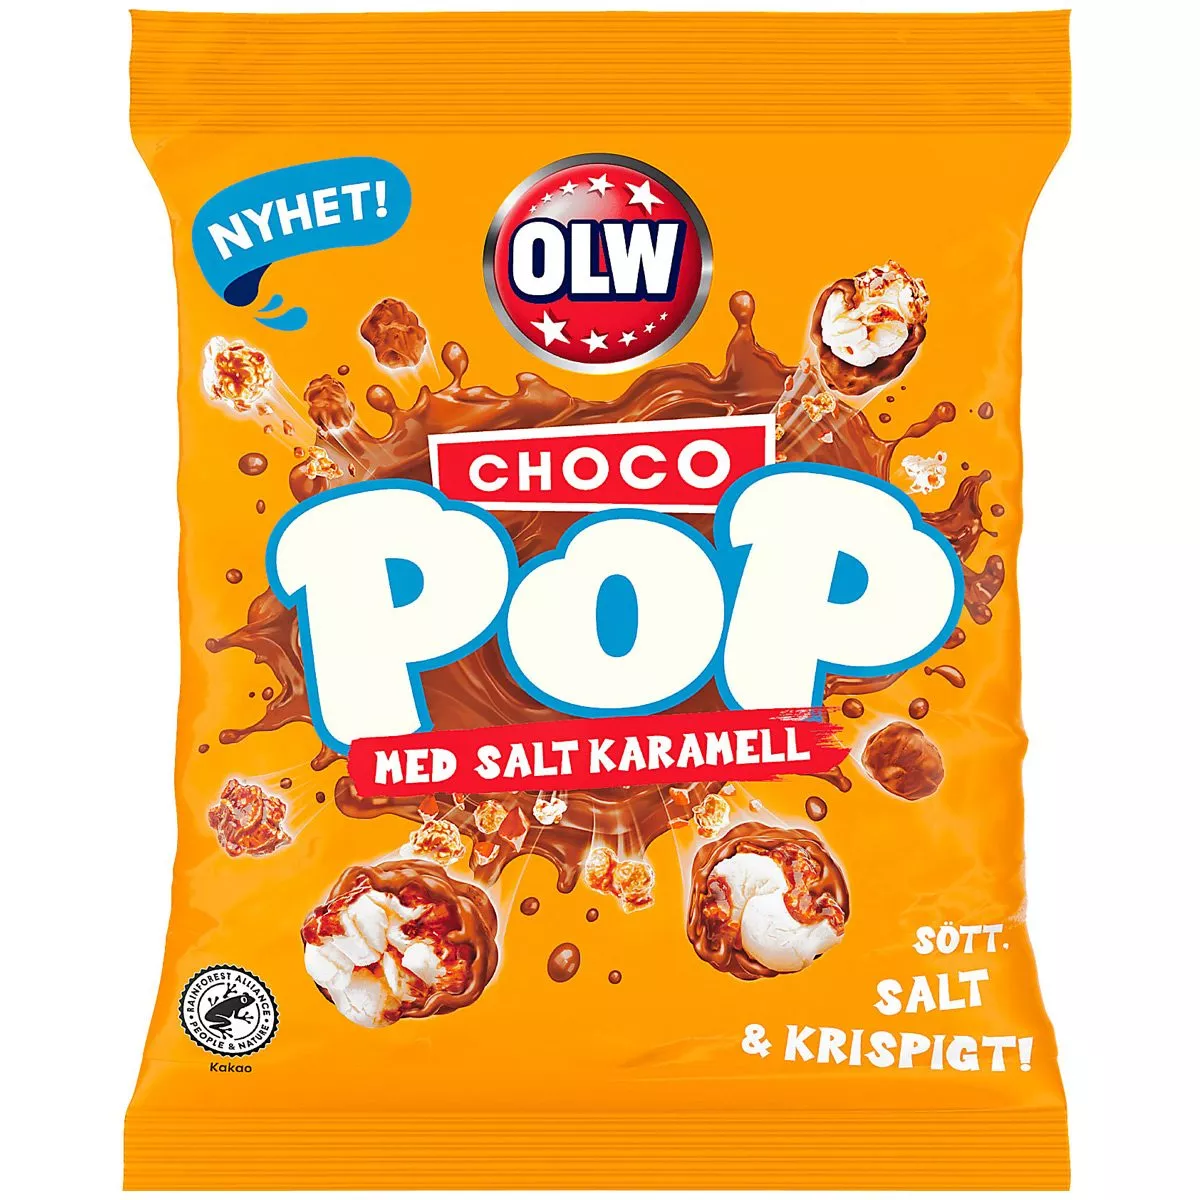 OLW Choco Pop Salted Caramel (80g) 1